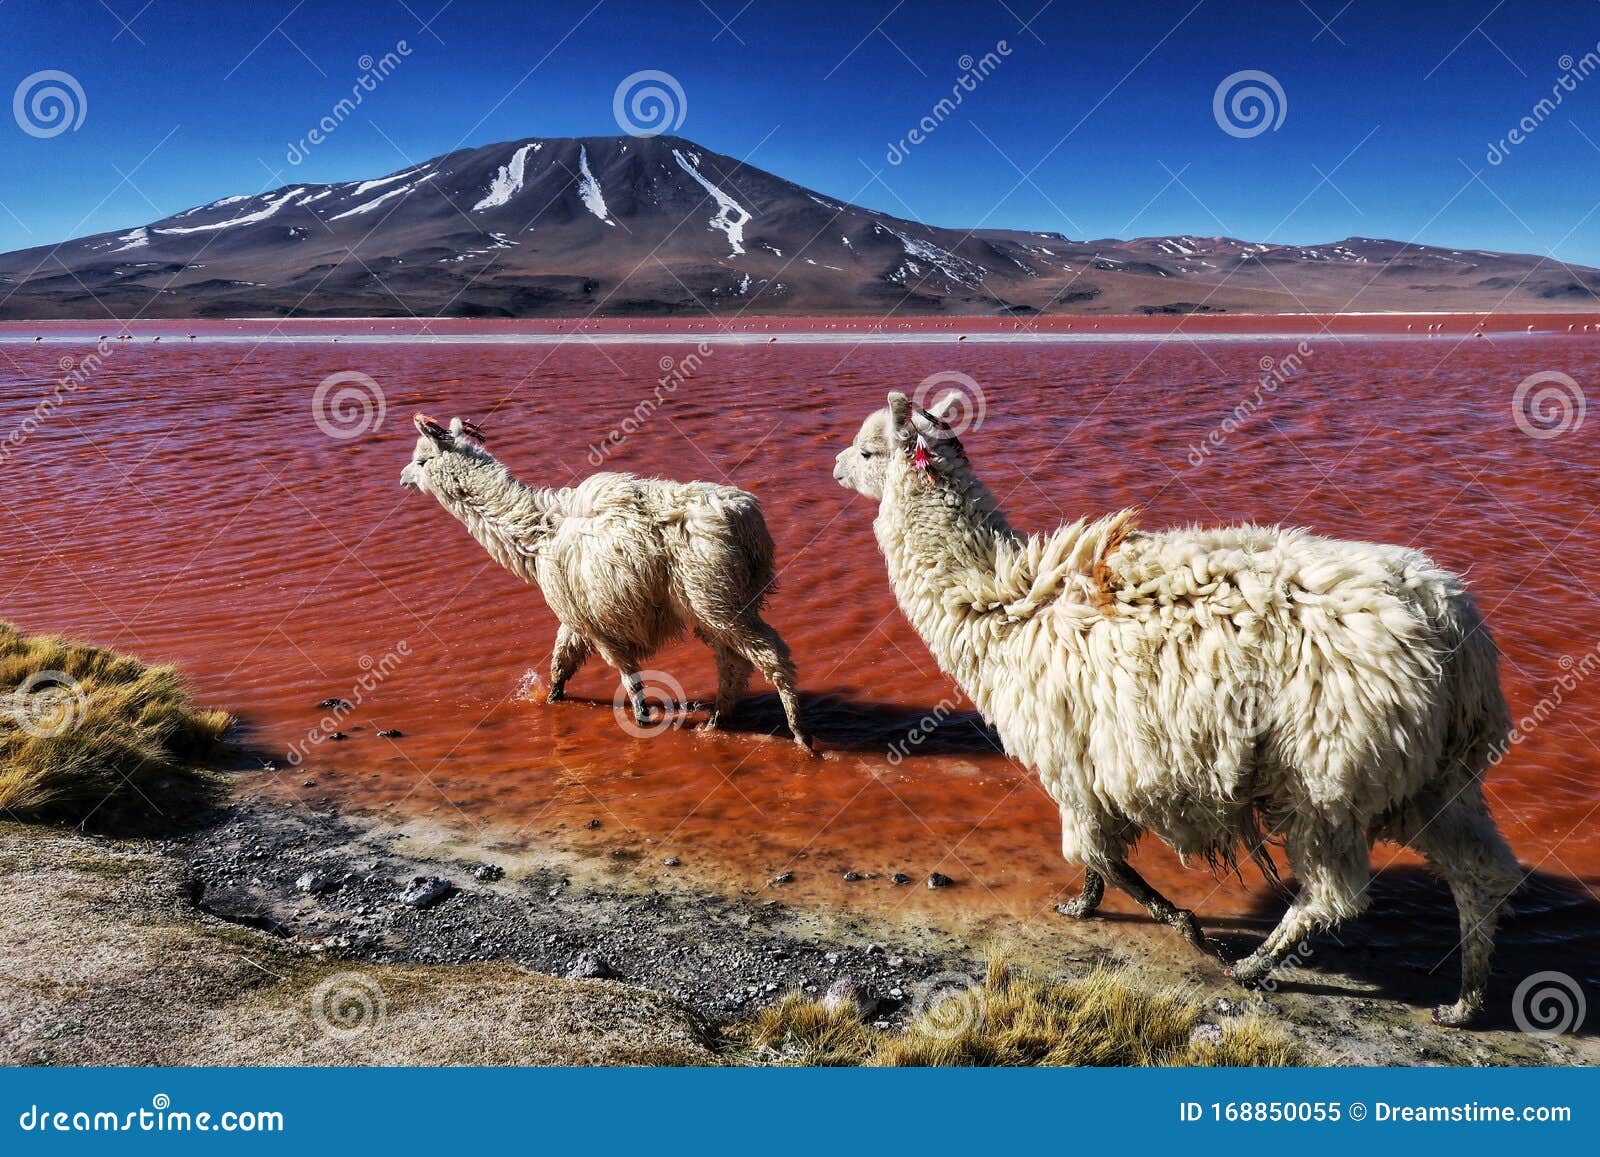 laguna-colorada-bol%C3%ADvia-llamas-na-lagoa-vermelha-uma-vis%C3%A3o-fascinante-de-dois-lhamas-natureza-selvagem-do-altiplano-168850055.jpg